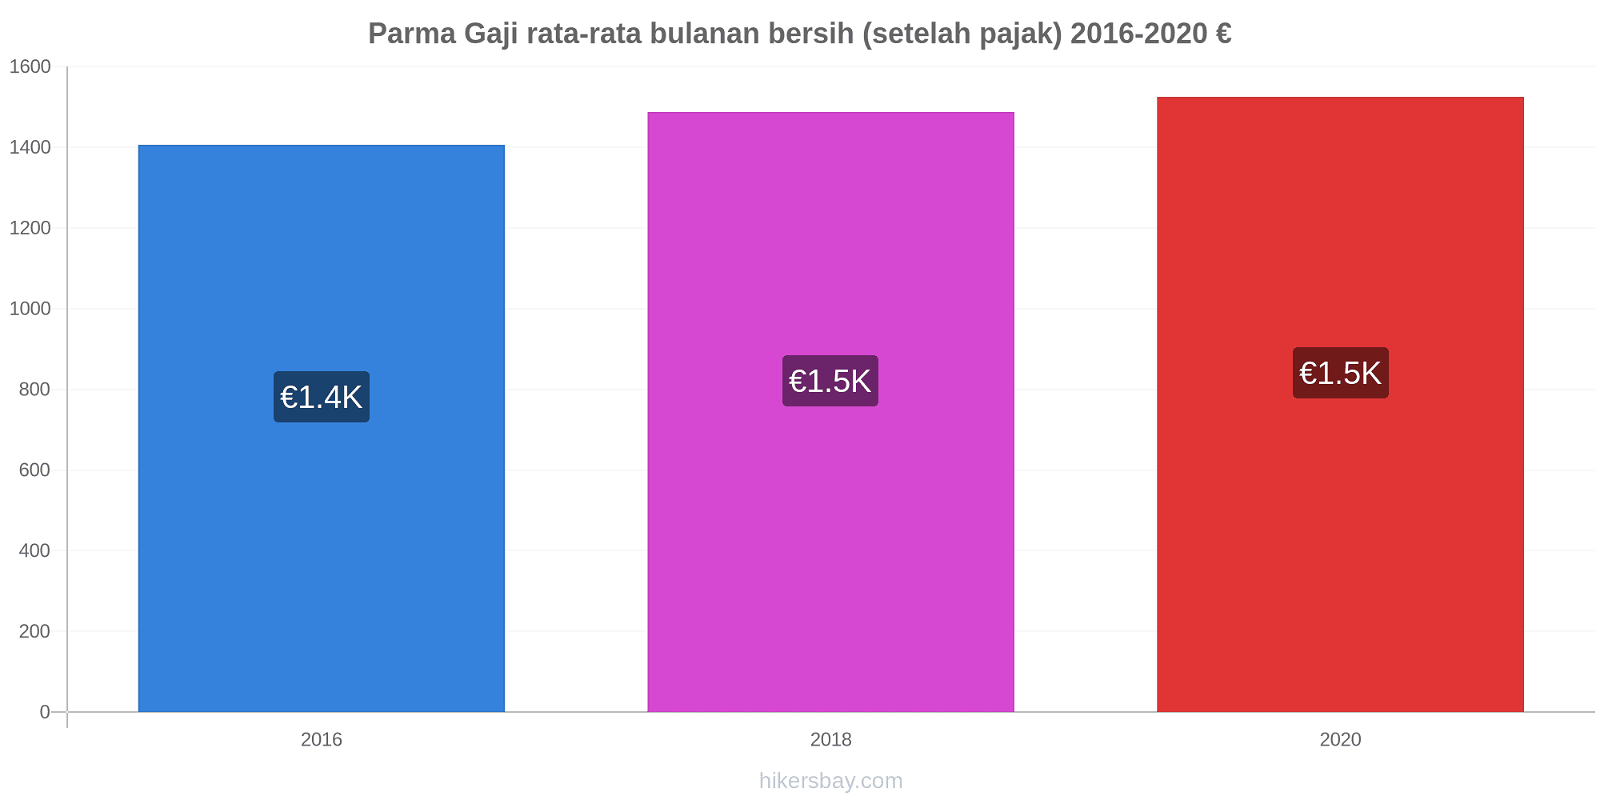 Parma perubahan harga Gaji rata-rata bulanan bersih (setelah pajak) hikersbay.com